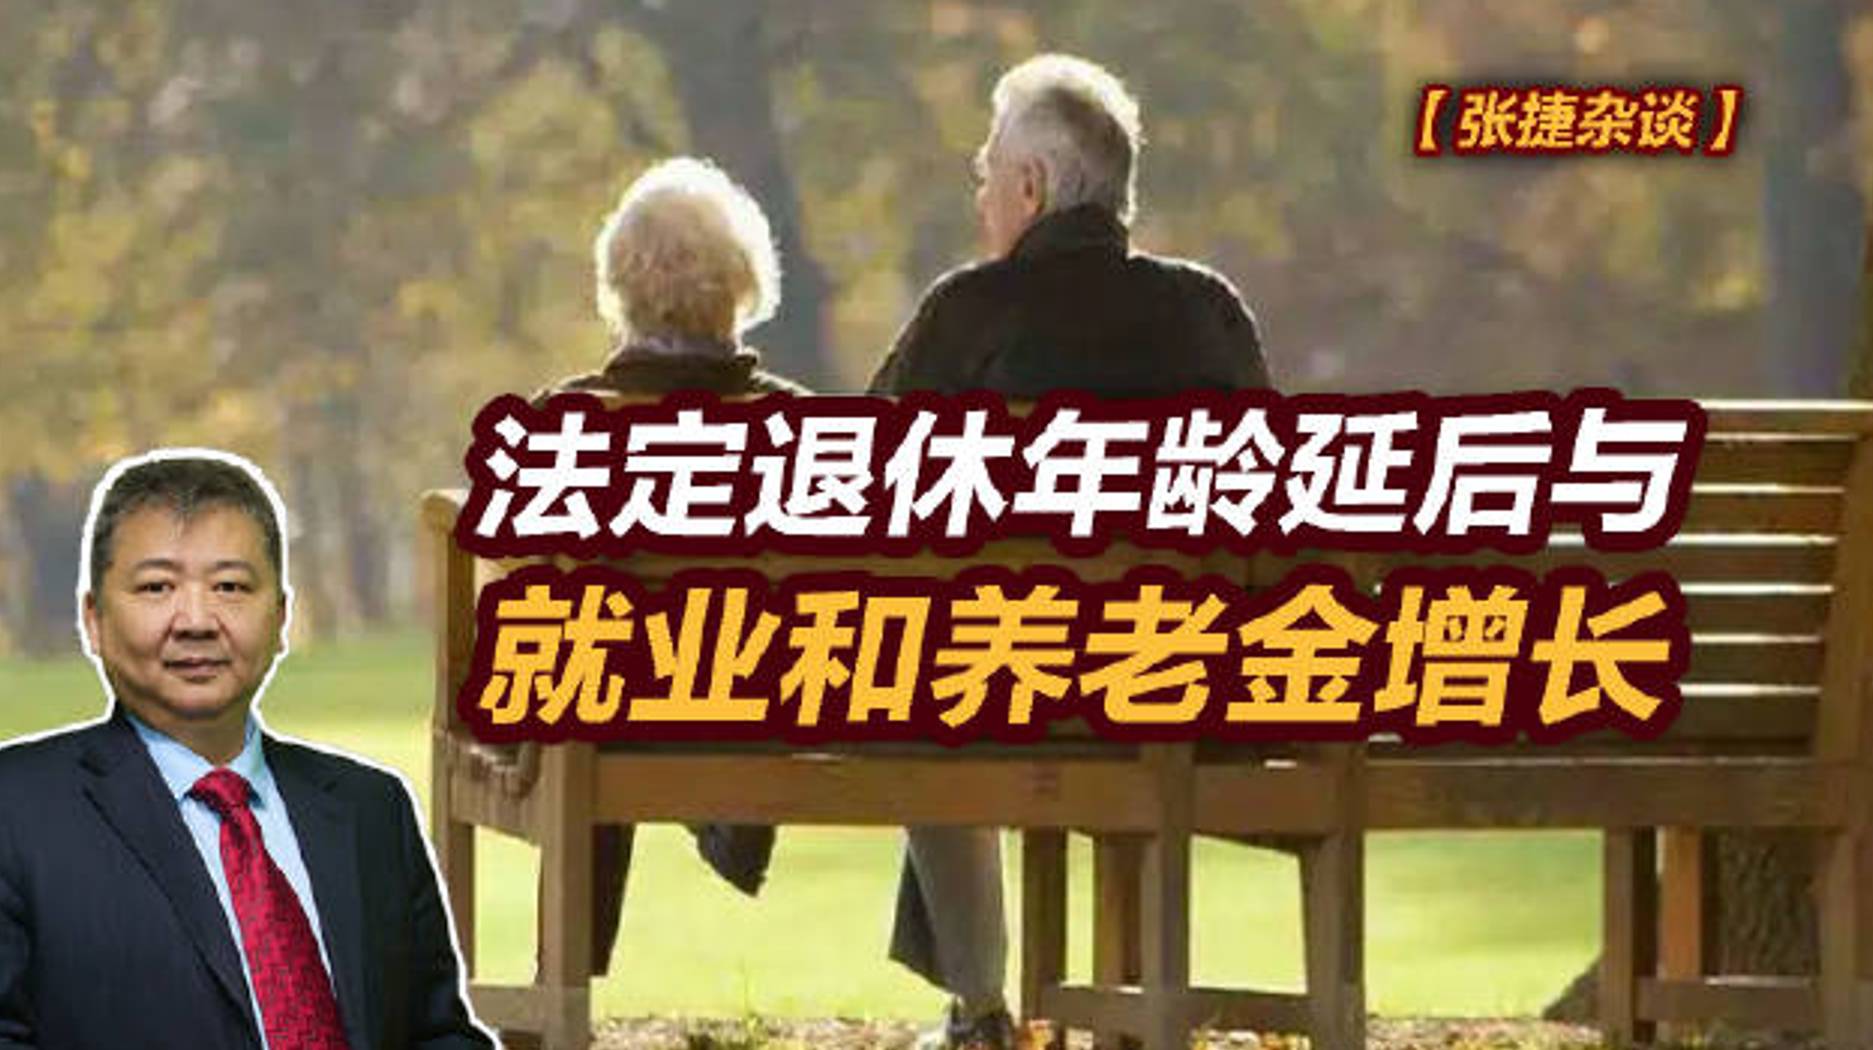 【张捷杂谈】法定退休年龄延后与就业和养老金增长